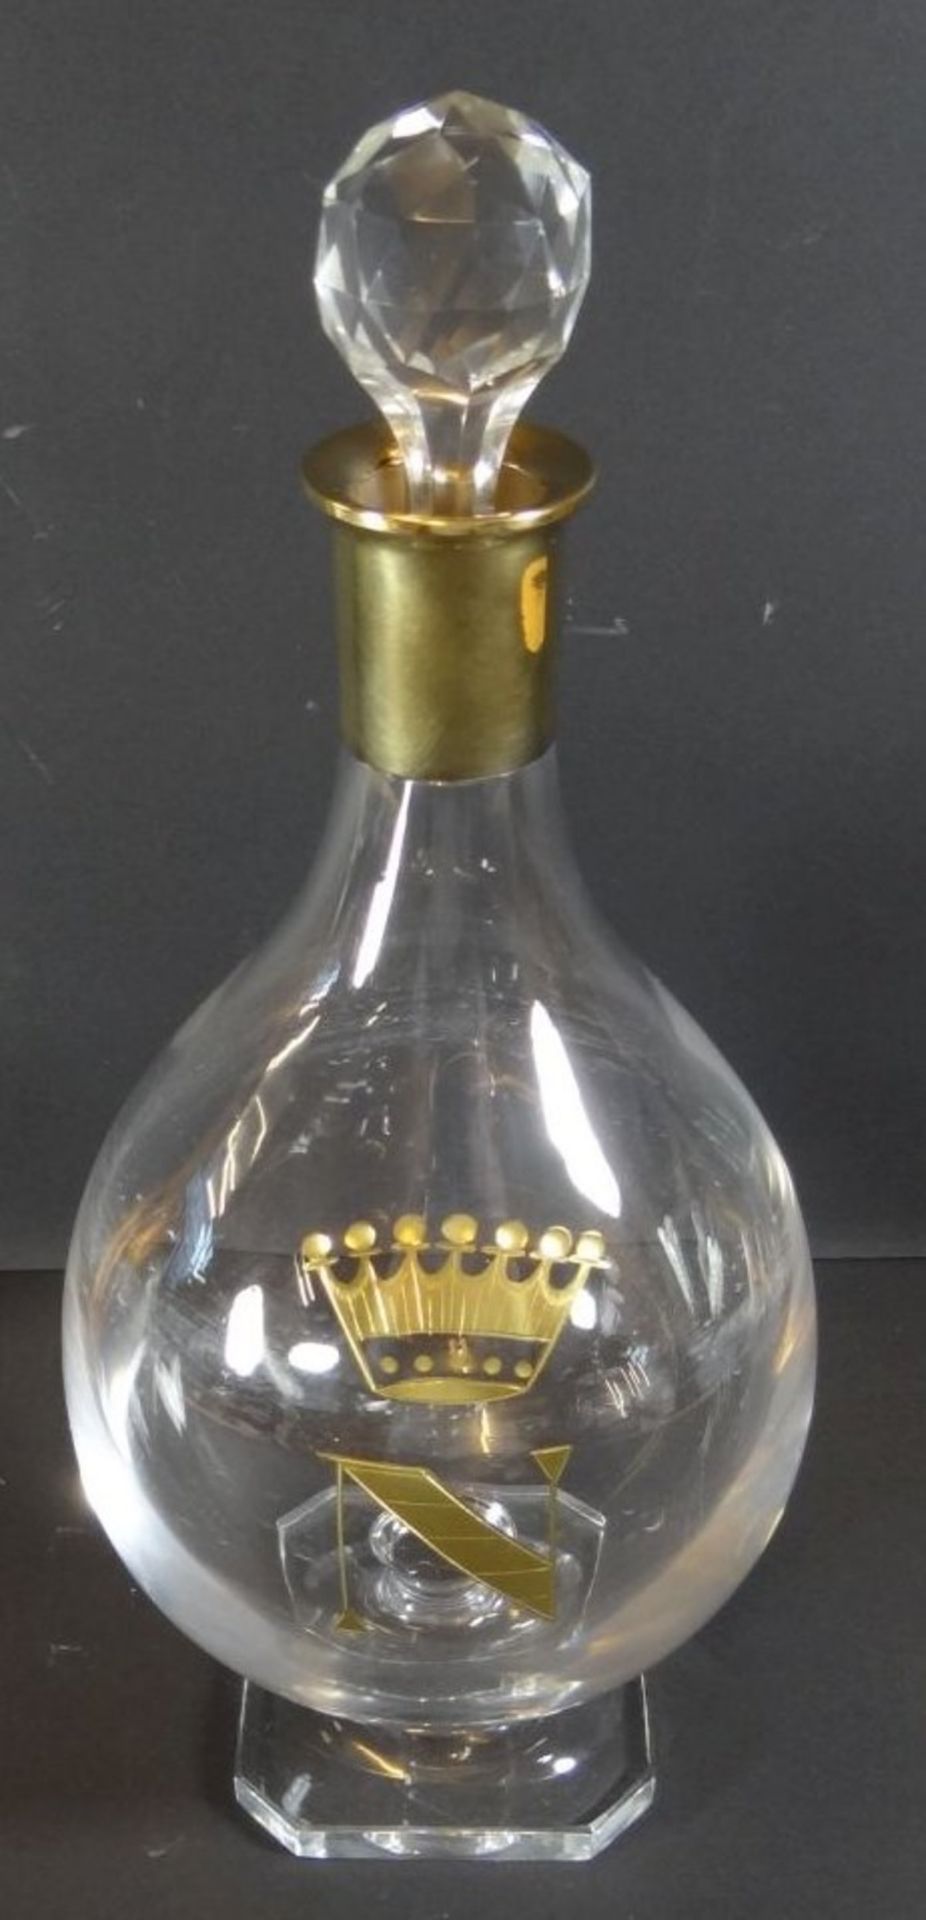 Kristall-Karaffe auf Stand, Silberhals-925-, vergoldet, auf Stand, H-31 cm, Krone mit "N", Stöpsel - Image 2 of 7